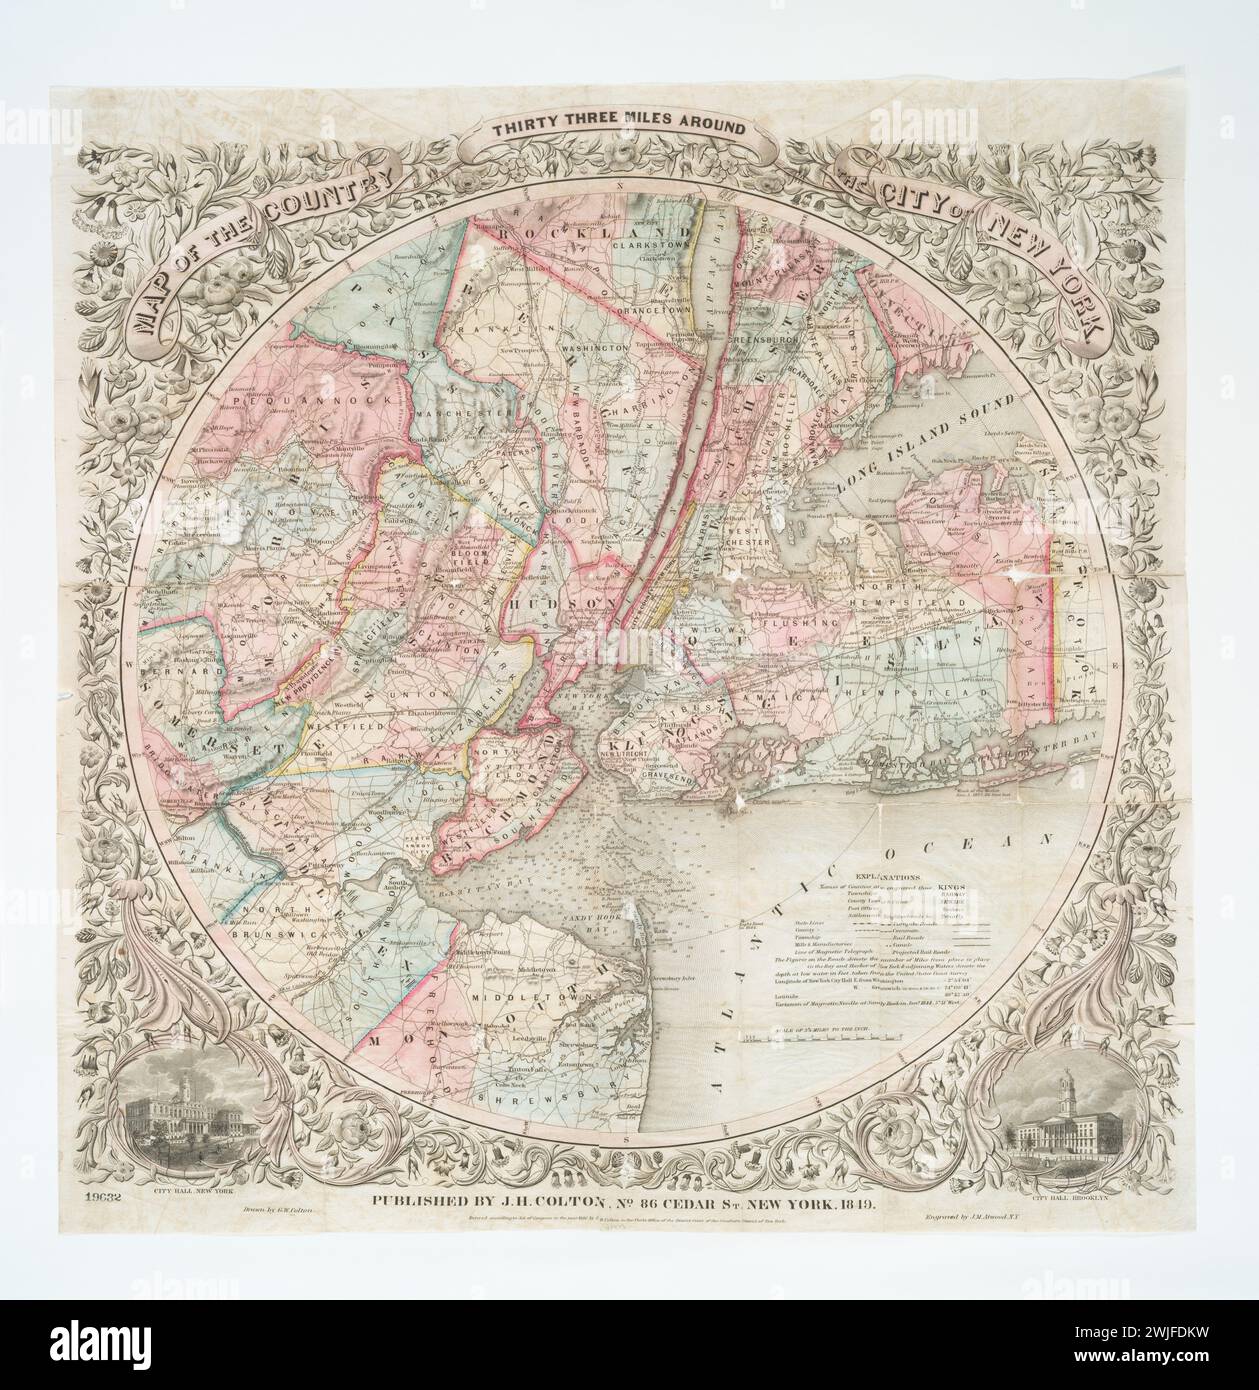 Mappa vintage Colton: New York City. Titolo: Mappa del paese trentatré miglia intorno alla città di New York / disegnata da G.W. Colton ; incisa da J.M. Atwood, N.Y.; Maps of New York City and State / New York City / Whole 1849 pubblicato da J.H. Colton Foto Stock